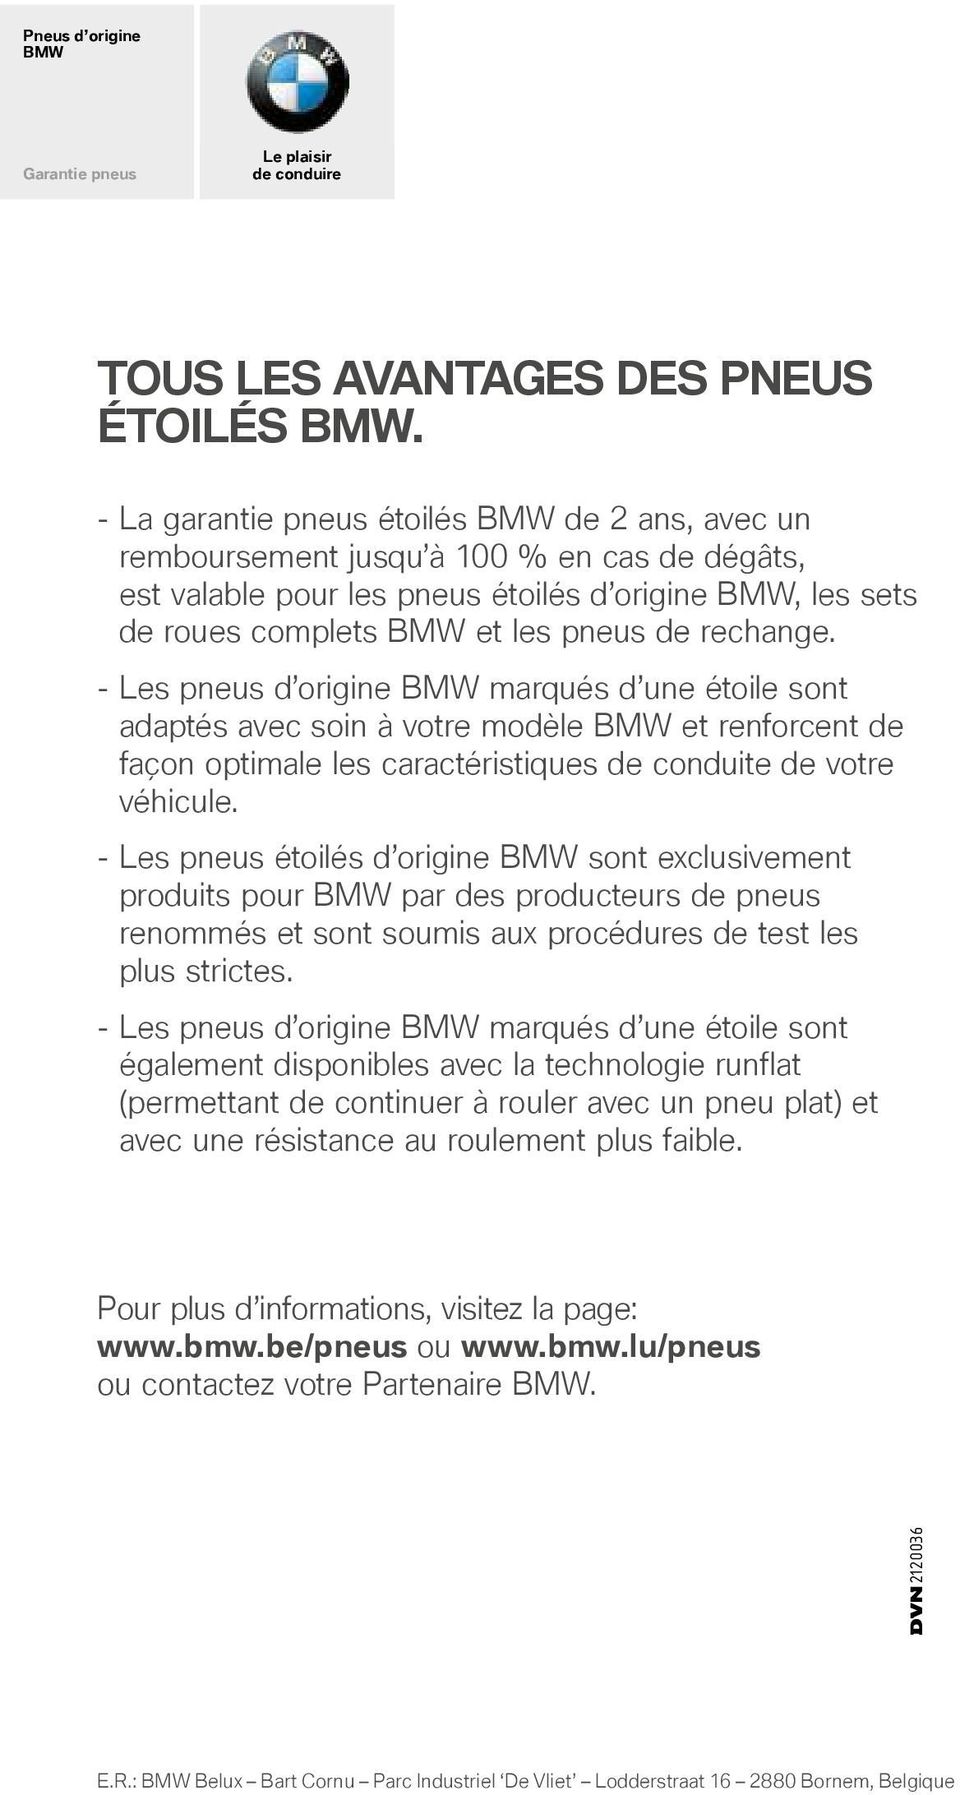 rechange. - Les pneus d origine BMW marqués d une étoile sont adaptés avec soin à votre modèle BMW et renforcent de façon optimale les caractéristiques de conduite de votre véhicule.